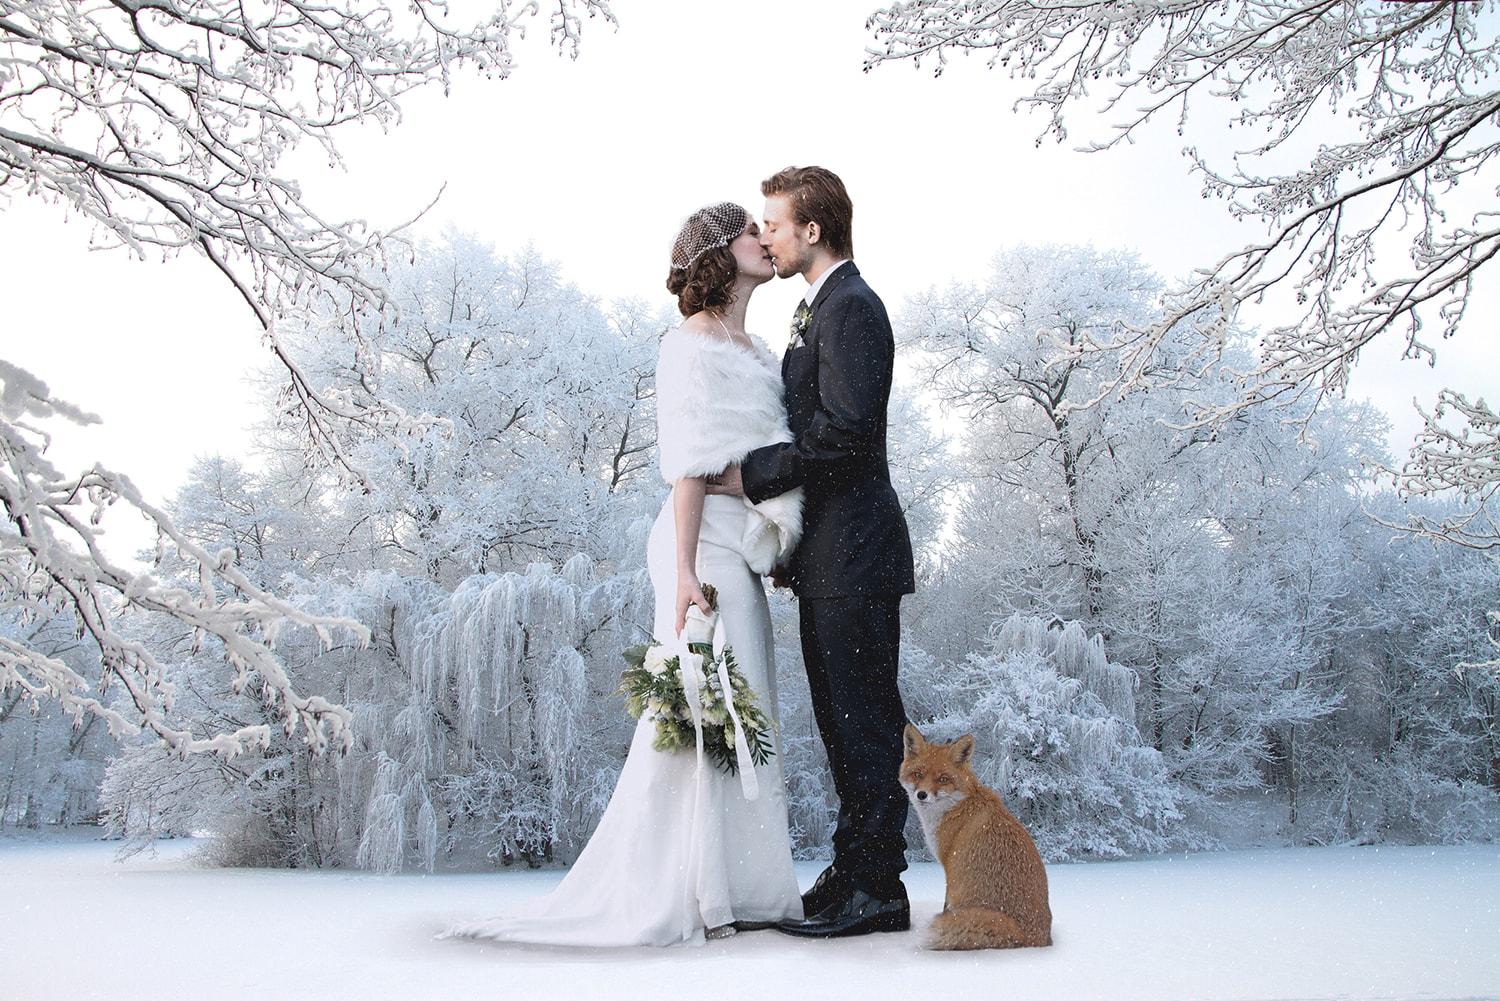 Свадьба зимой, что нужно учитывать / Блоги / Свадьба в Нижнем Новгороде